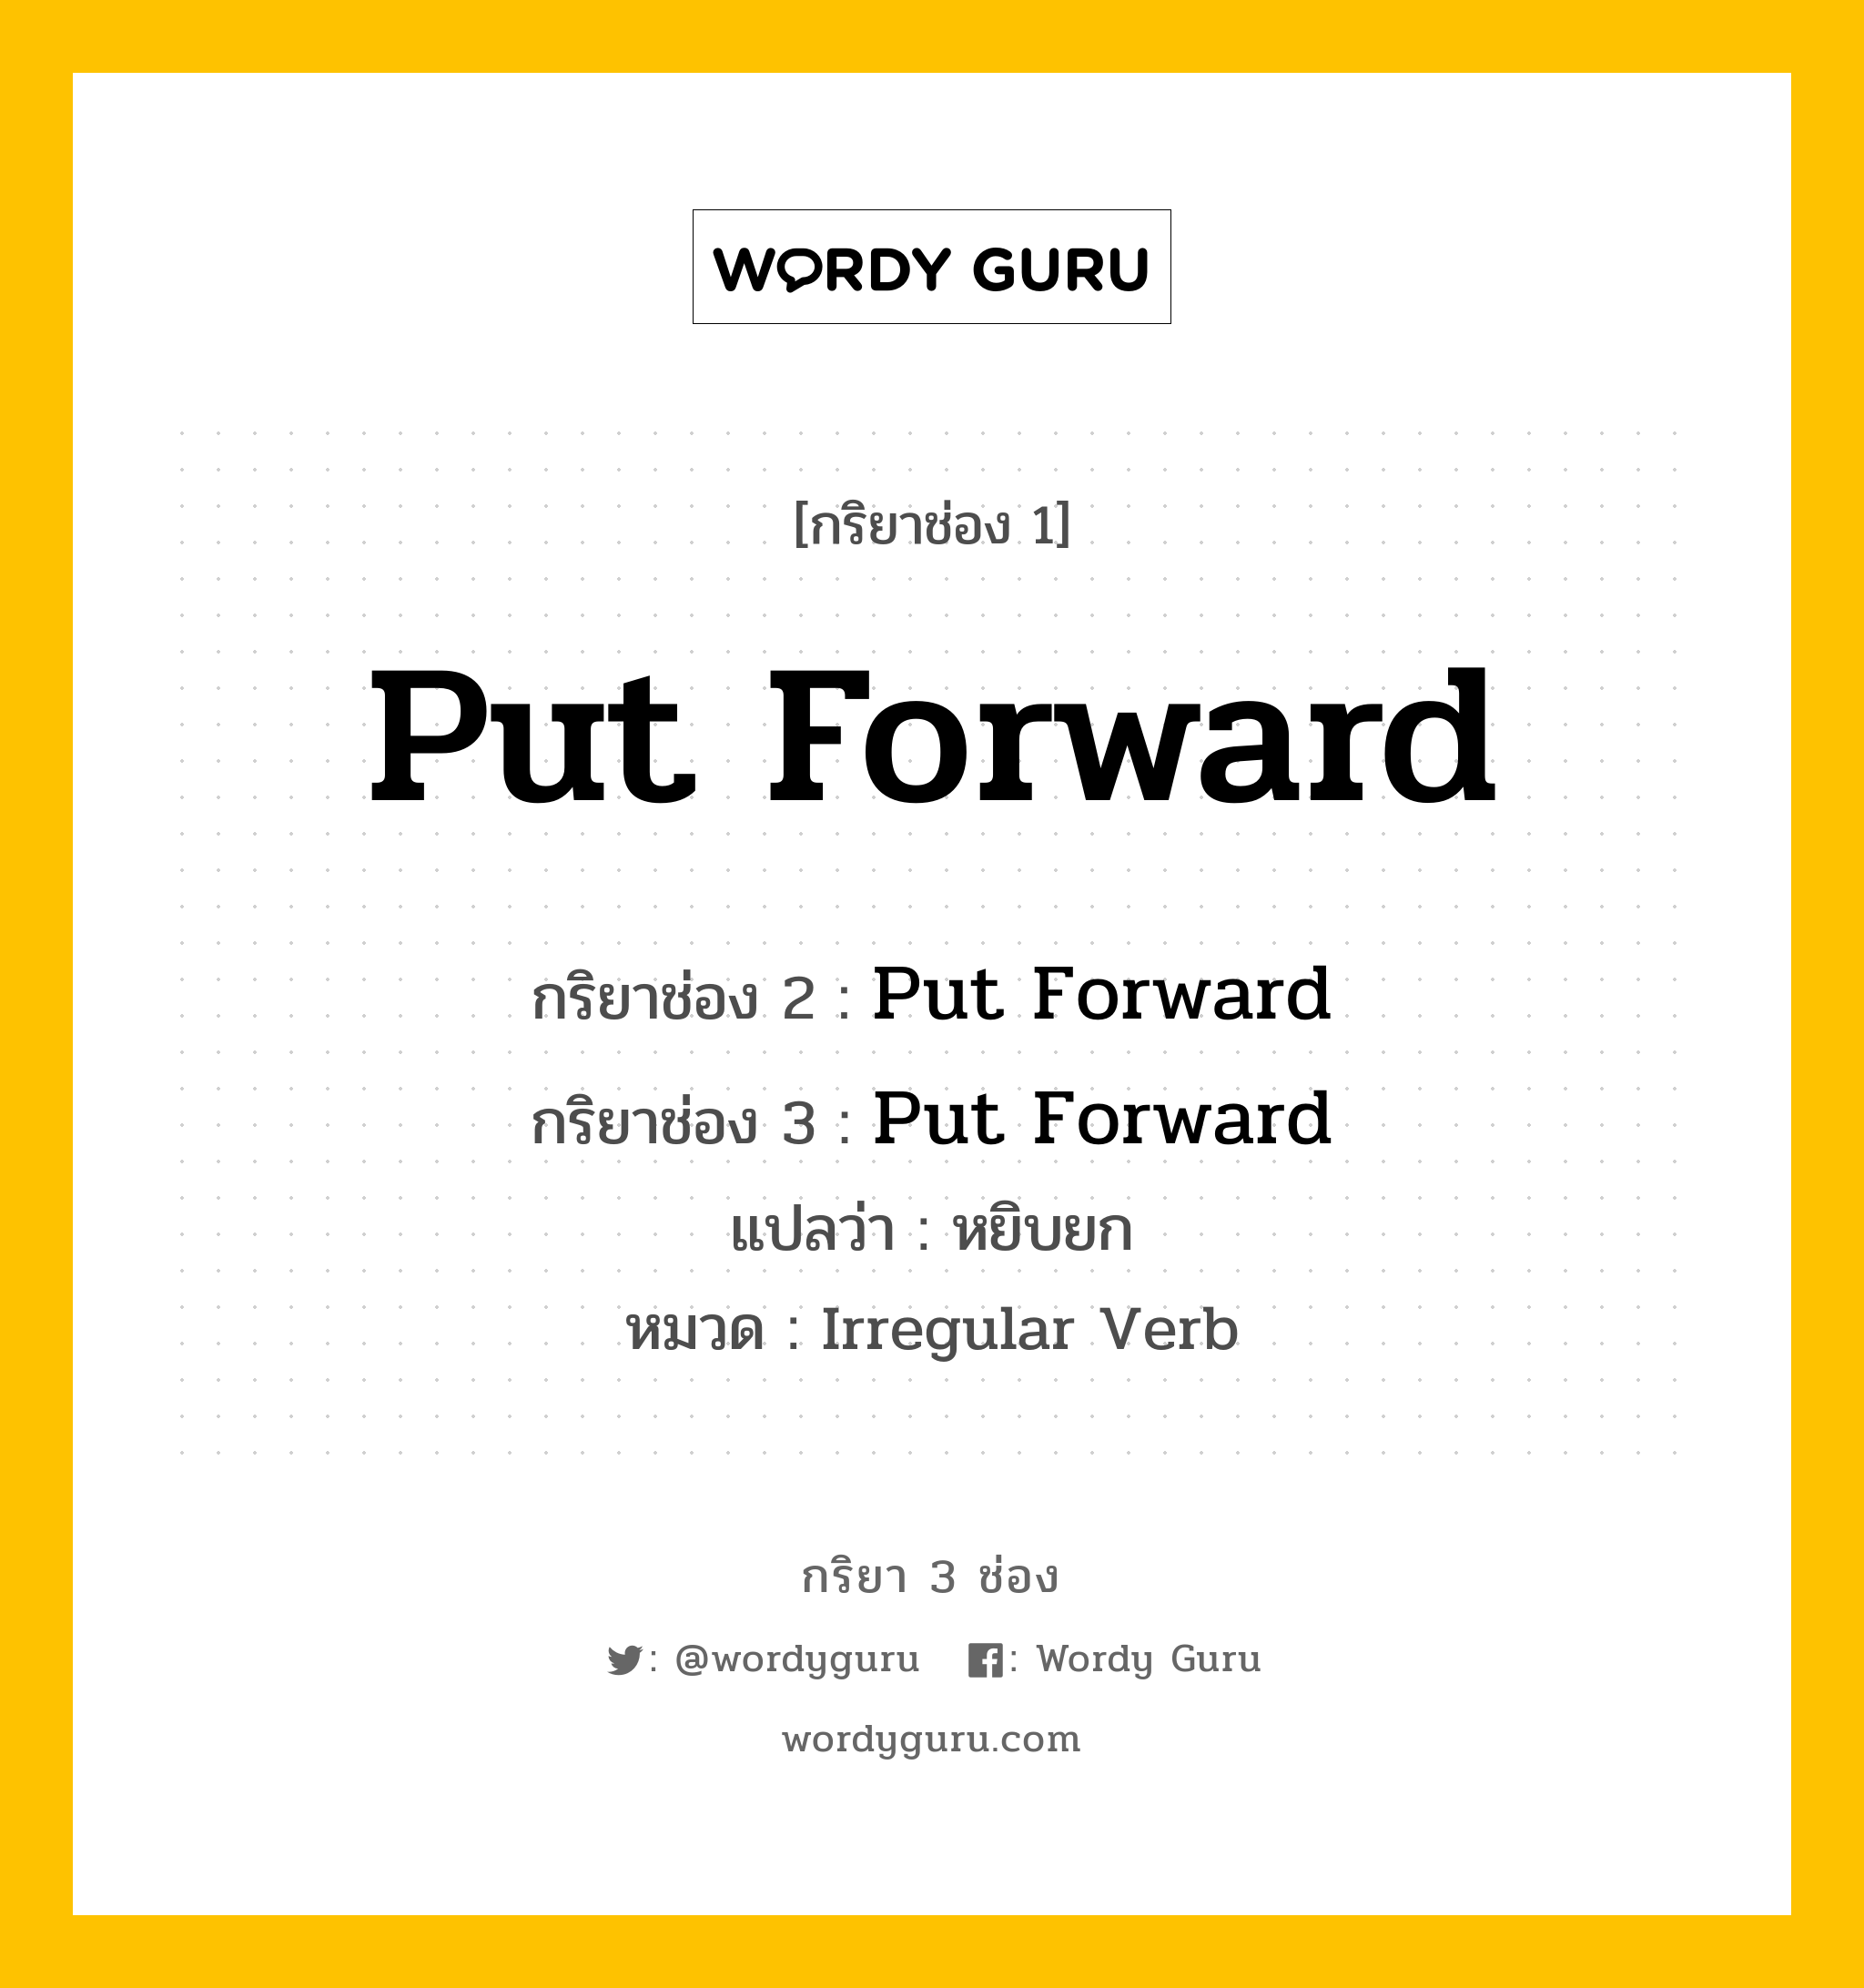 กริยา 3 ช่อง: Put Forward ช่อง 2 Put Forward ช่อง 3 คืออะไร, กริยาช่อง 1 Put Forward กริยาช่อง 2 Put Forward กริยาช่อง 3 Put Forward แปลว่า หยิบยก หมวด Irregular Verb หมวด Irregular Verb